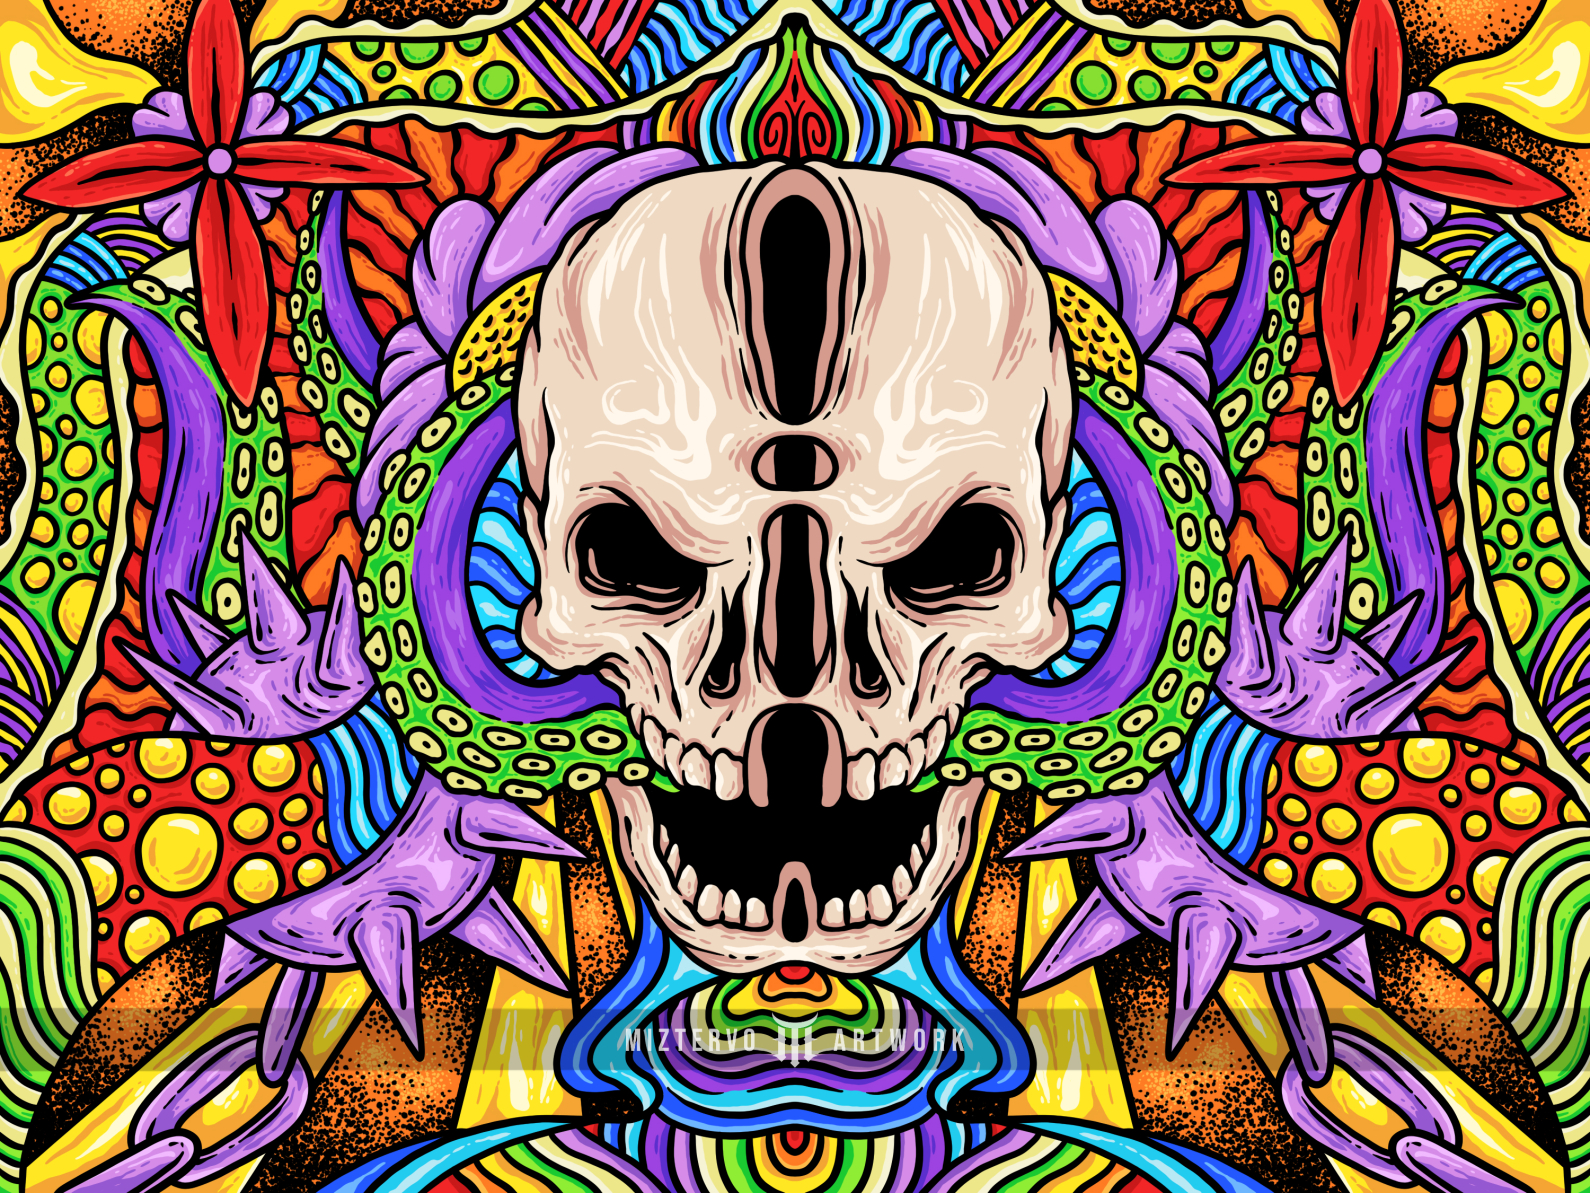 Psychedelic Skull by Miztervo on Dribbble